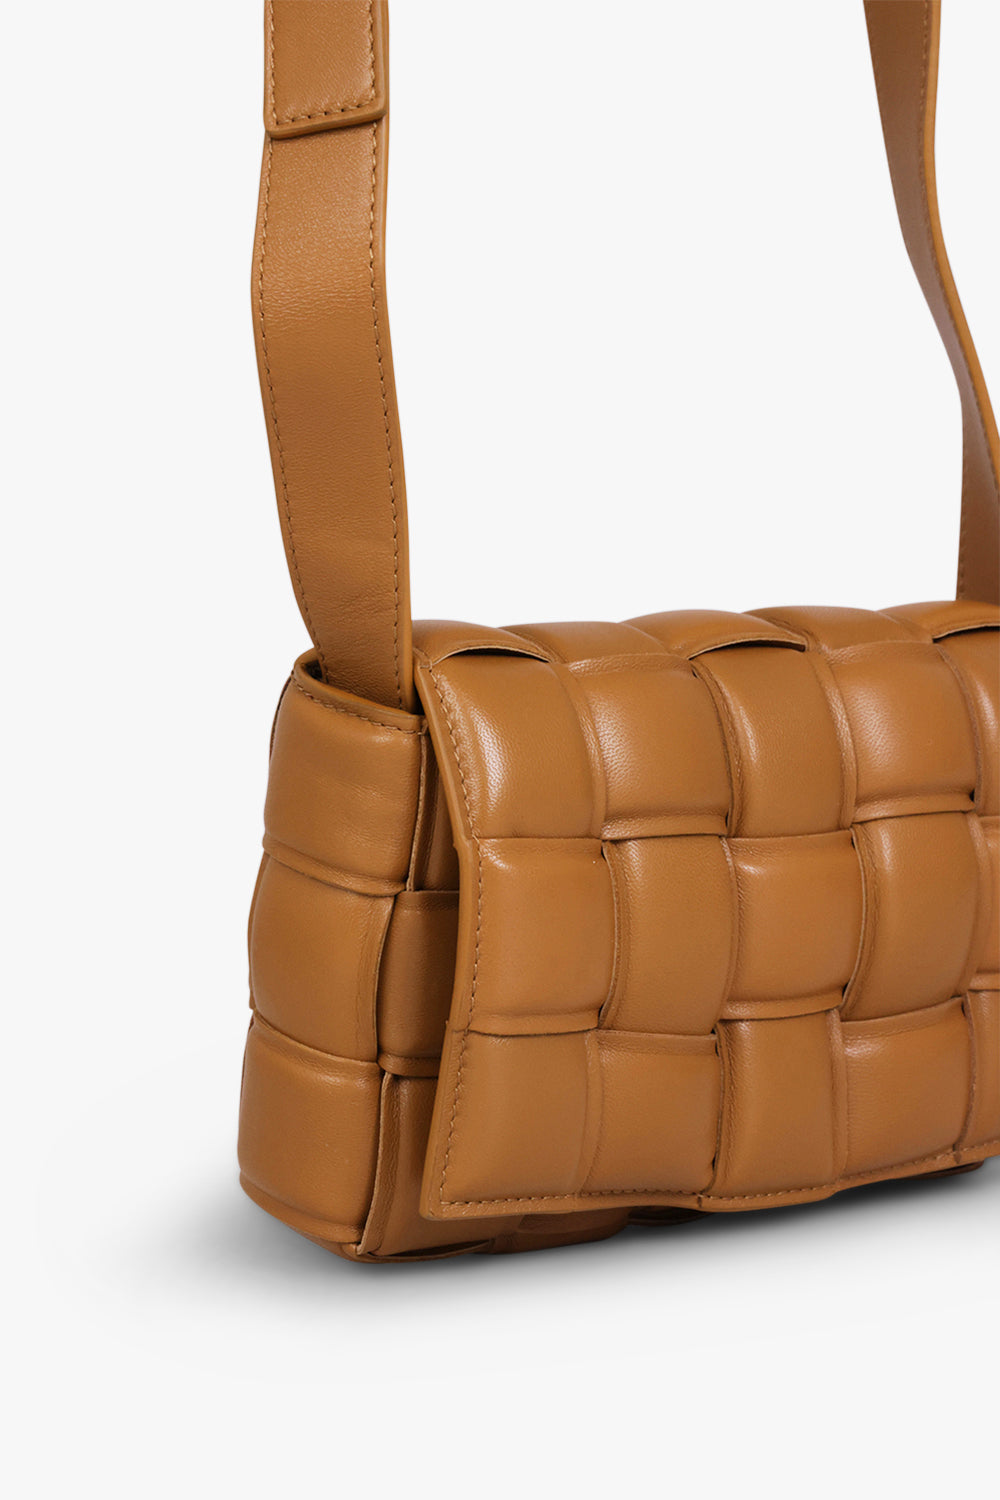 BOTTEGA VENETA BAGS BROWN SMALL PADDED CASSETTE BAG | CAMEL/GOLD